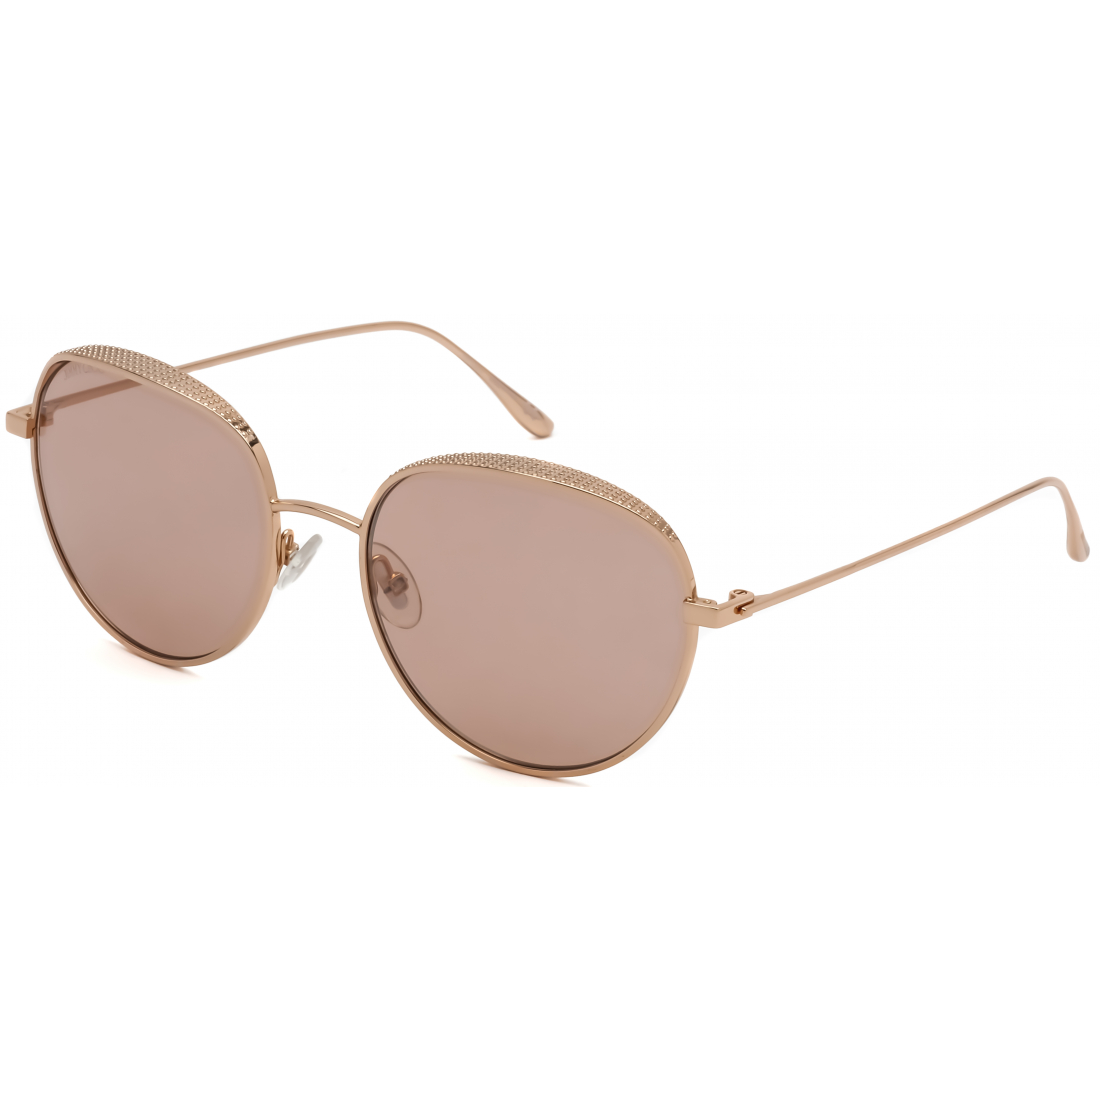 'ELLO/S BKU REDGD' Sonnenbrillen für Damen